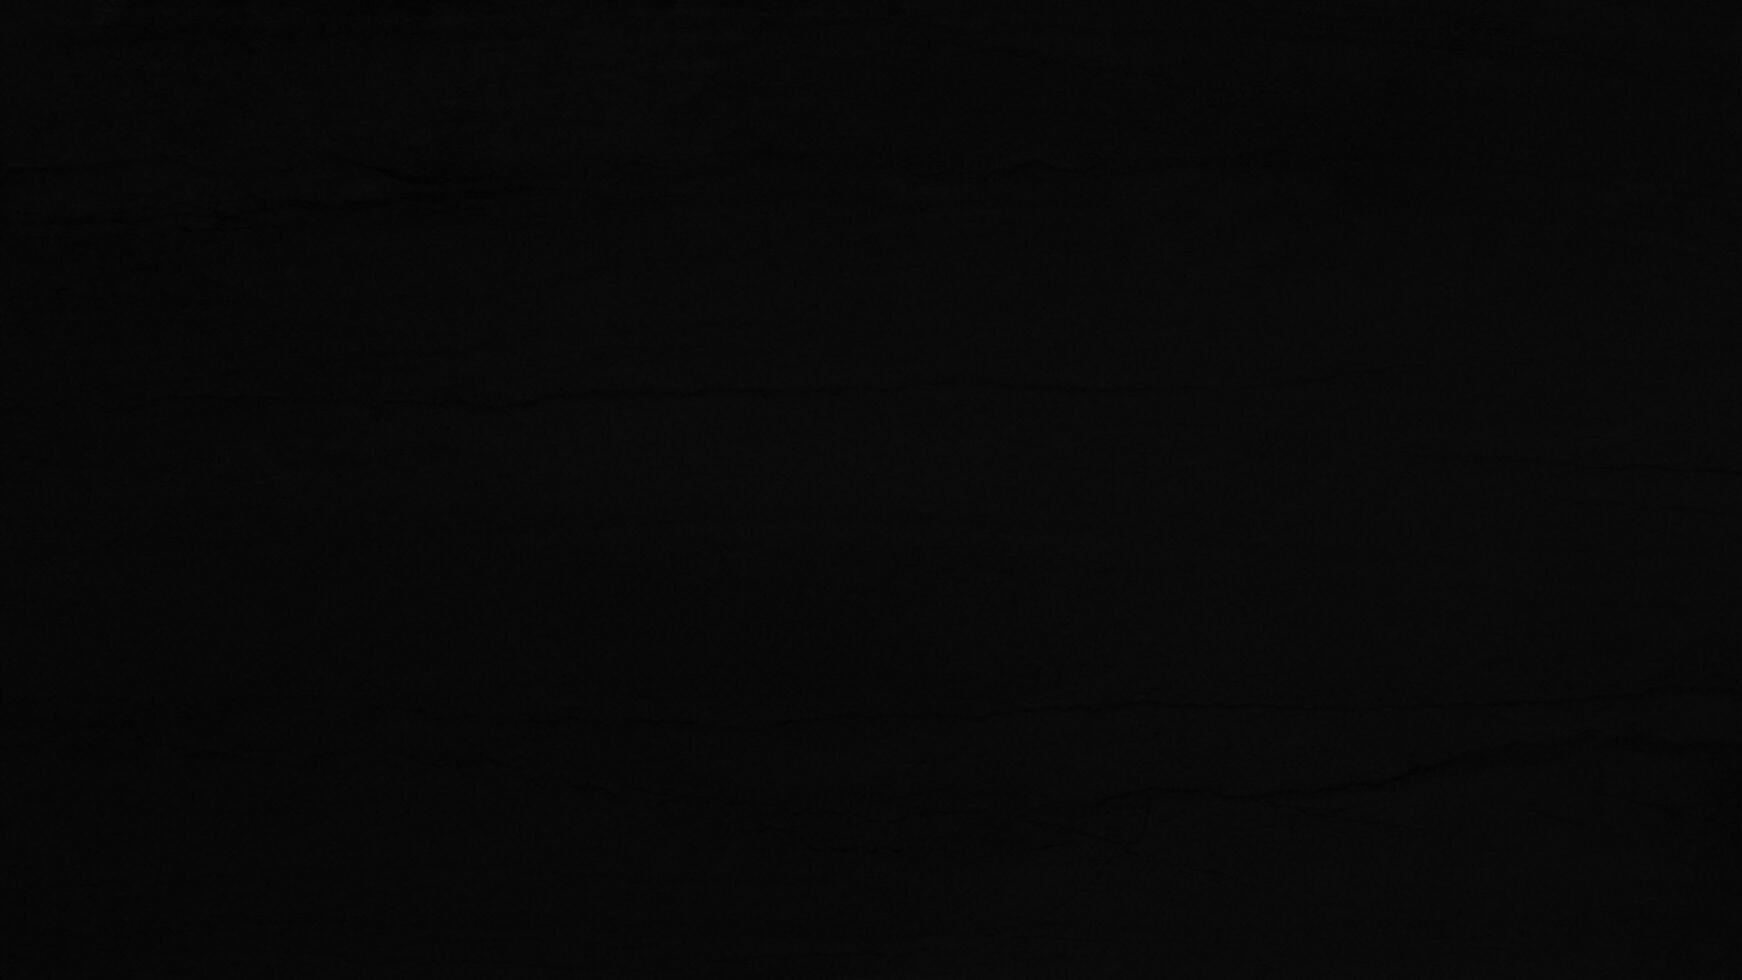 Hintergrund Farbverlauf schwarzes Overlay abstrakter Hintergrund schwarz, Nacht, dunkel, Abend, mit Platz für Text, für einen Hintergrund... foto